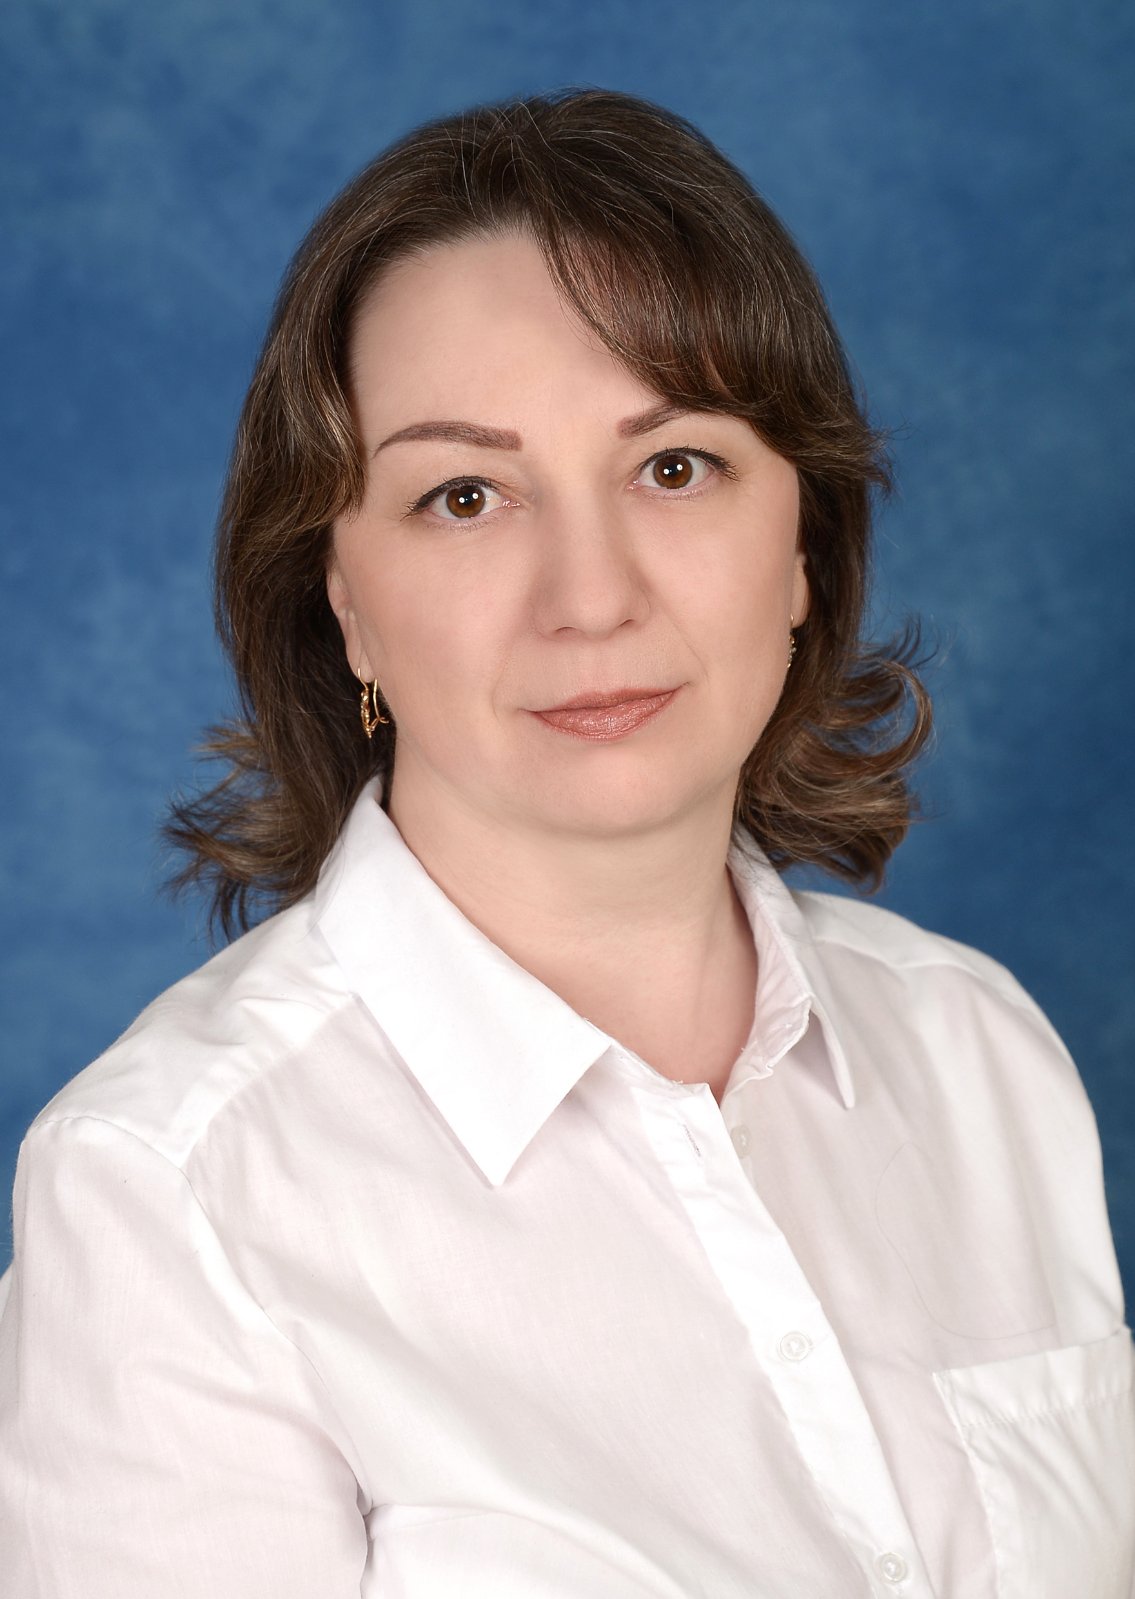 Педагогический работник Катасонова Евгения Александровна.